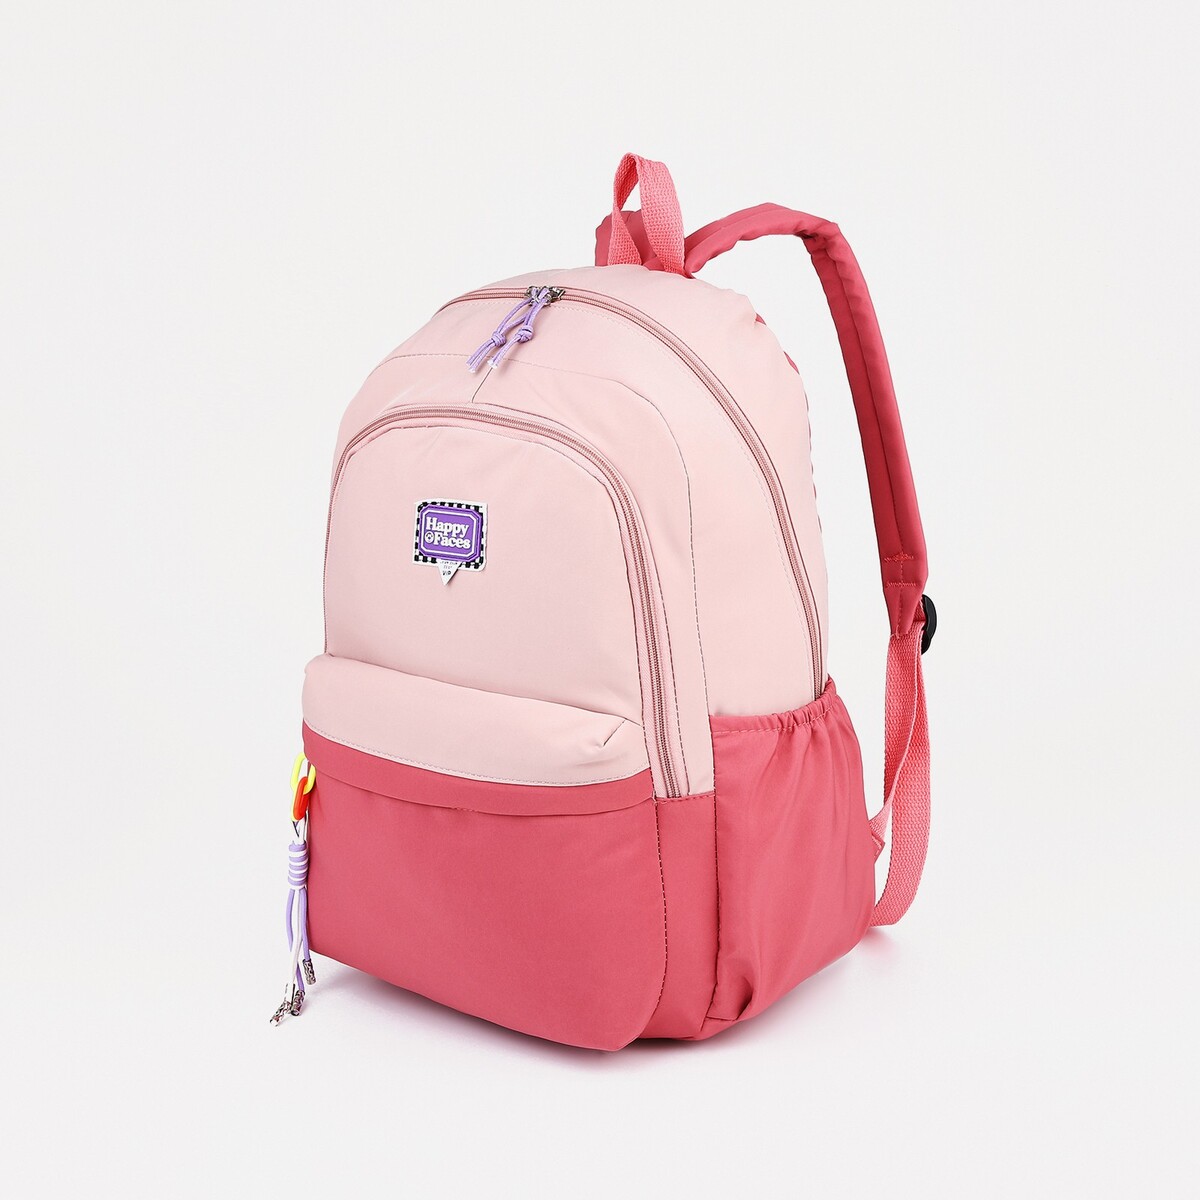 Рюкзак на молнии, 4 наружных кармана, цвет розовый рюкзак туристический на молнии 4 наружных кармана красный